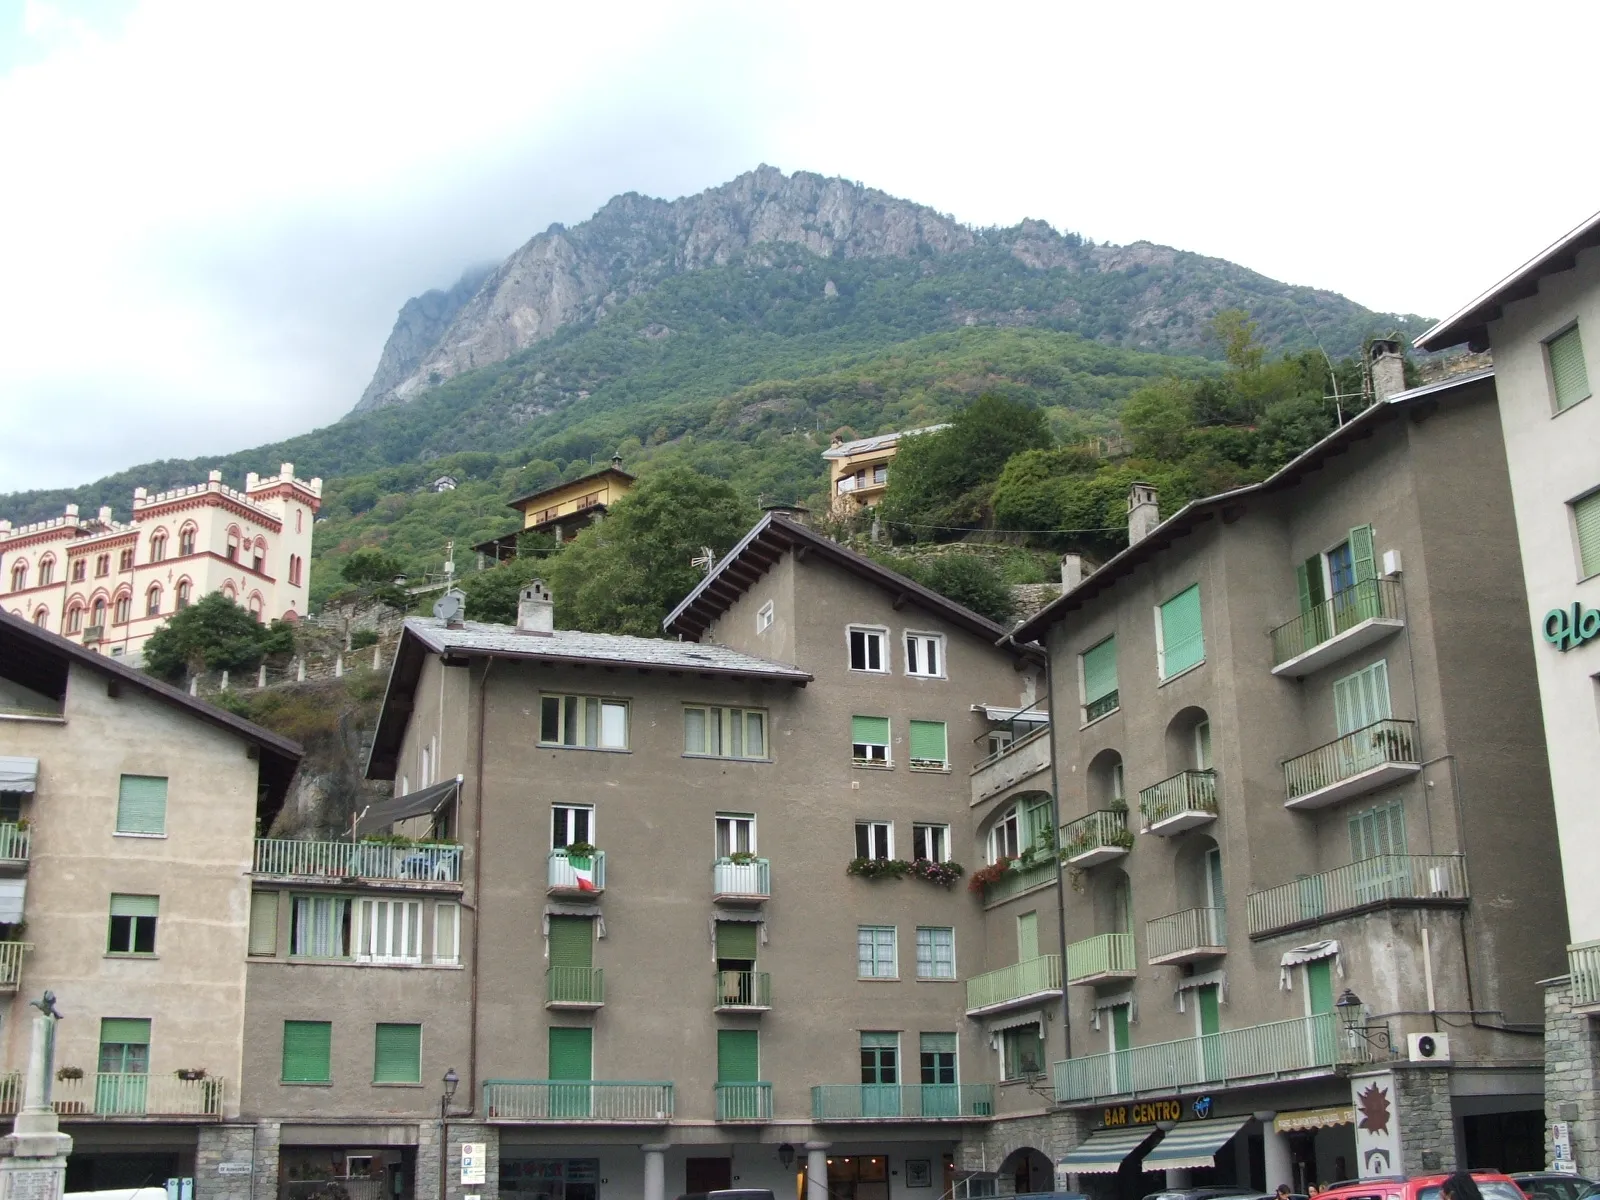 Bild von Aostatal/Aostatal